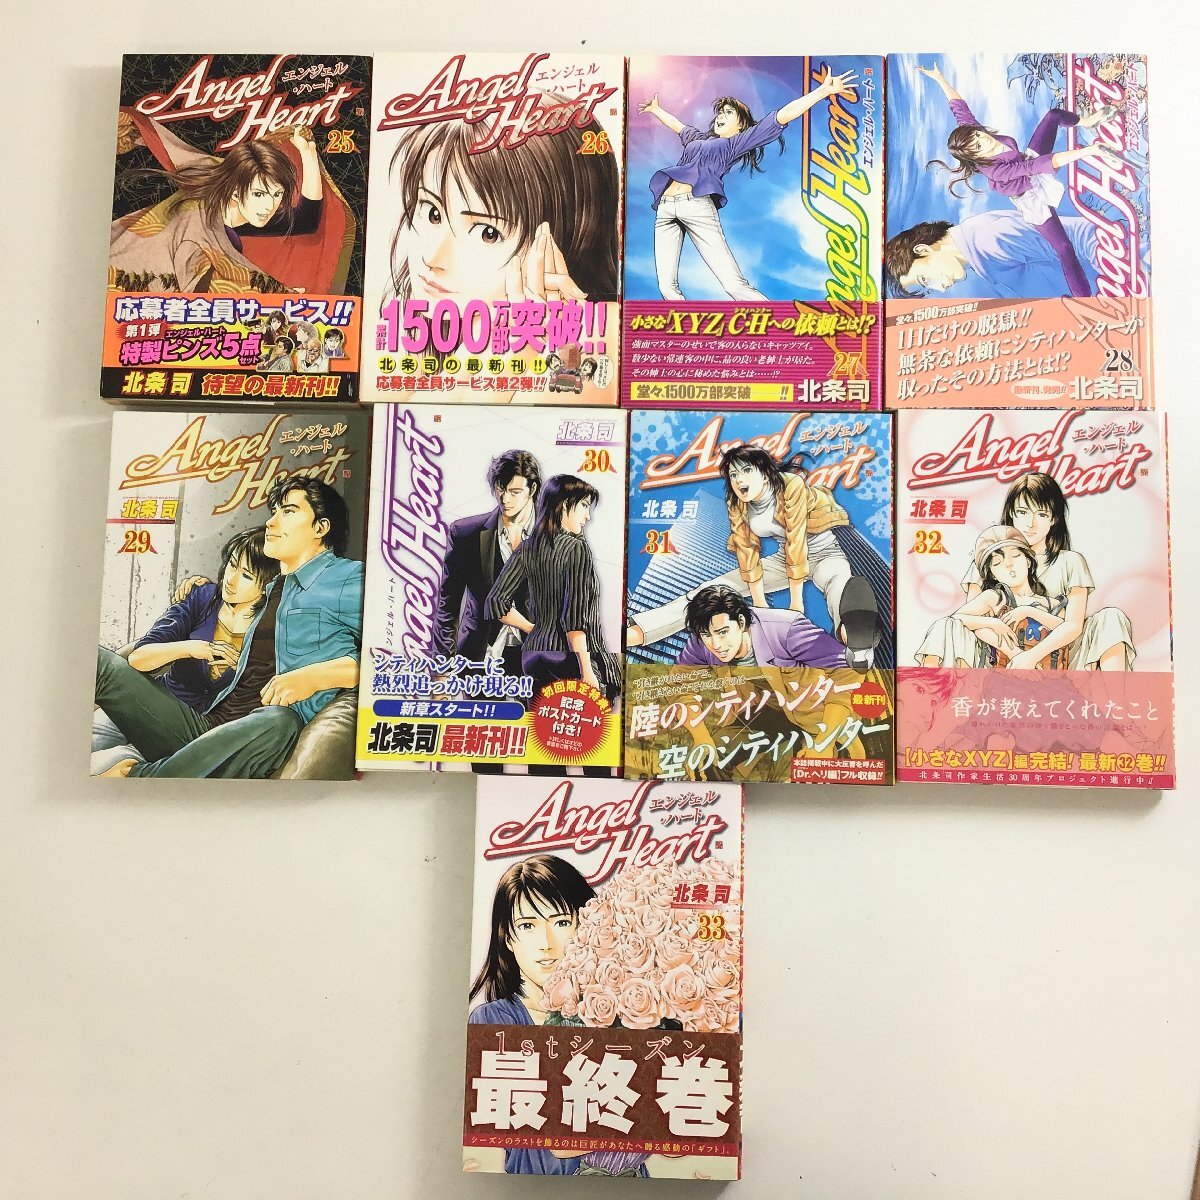 *1 иен старт * City Hunter Angel Heart .. комплект и т.п. север статья . комиксы манга manga (манга) [ включение в покупку не возможно / распродажа /05-110]